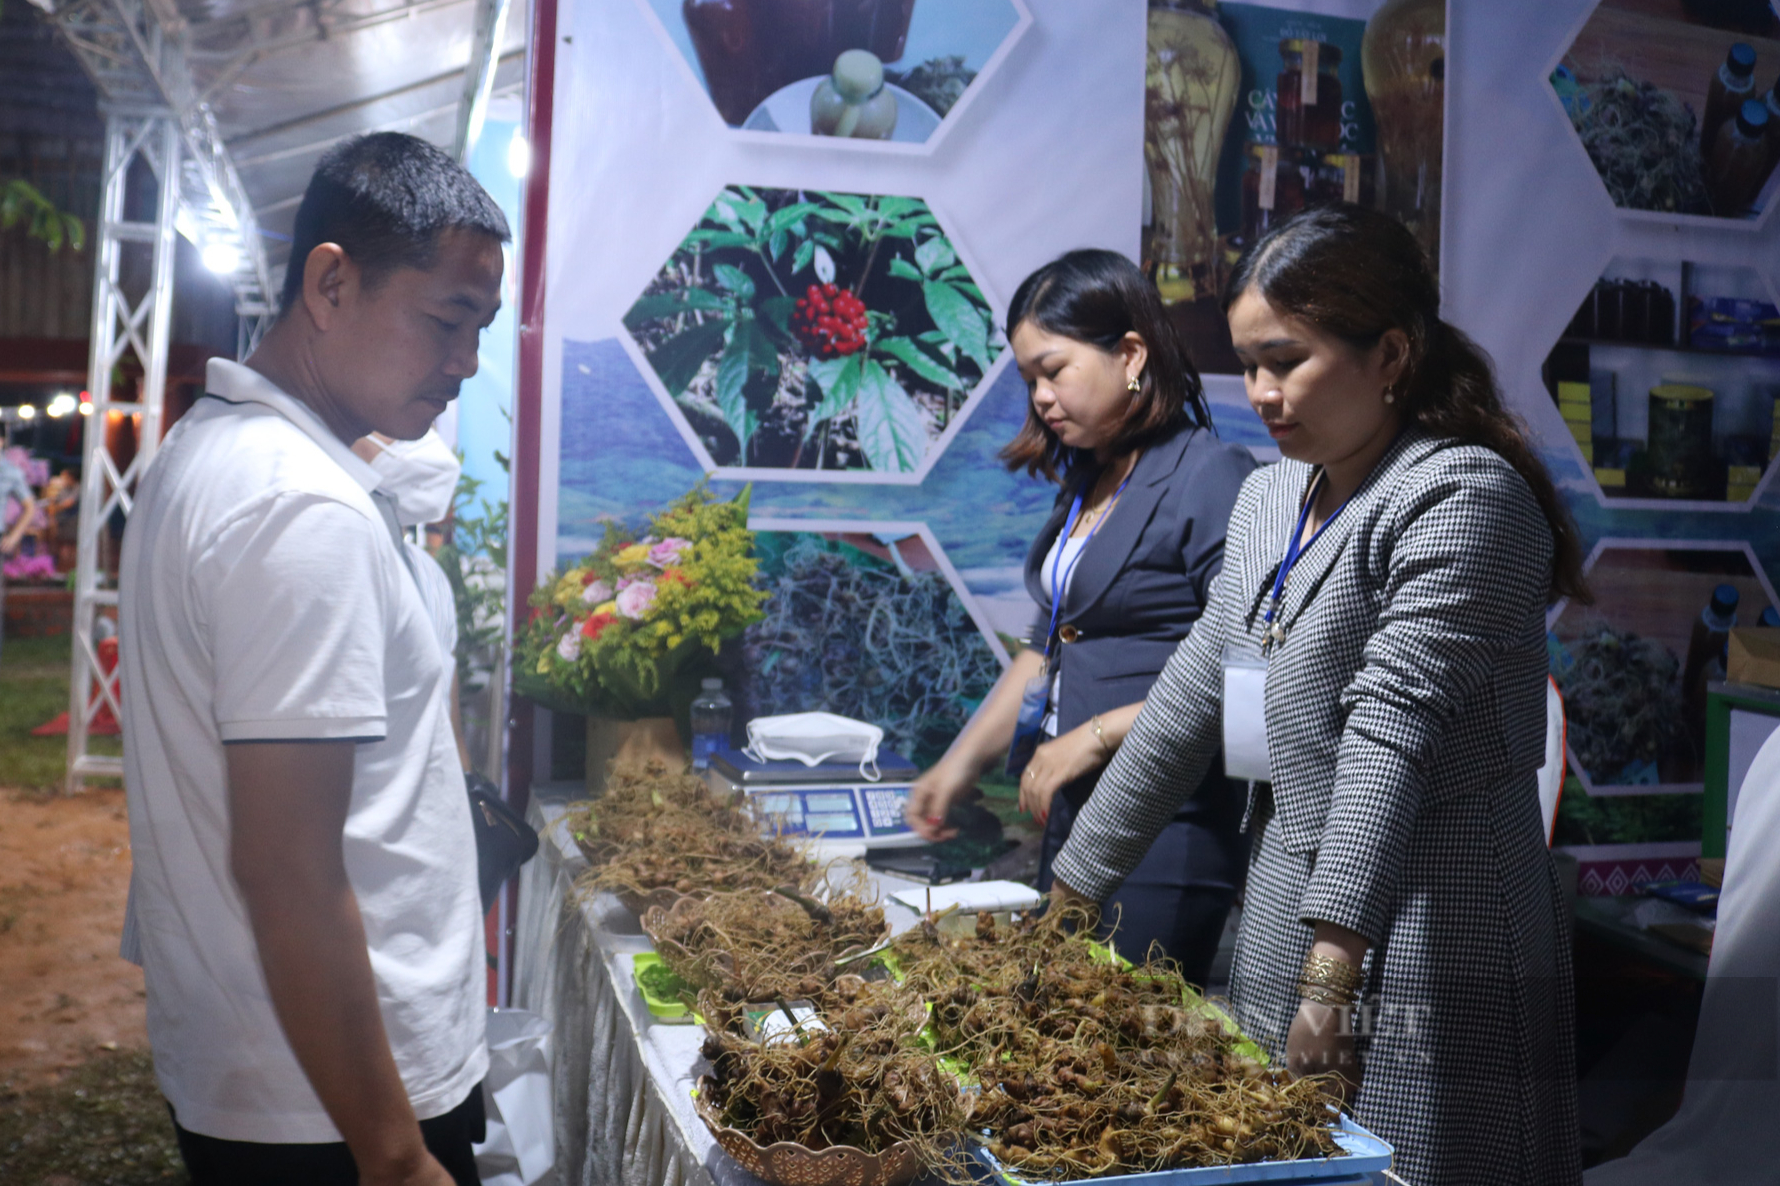 Phiên chợ sâm Ngọc Linh được tổ chức lần đầu ở Kon Tum thu về khoảng 30 tỷ đồng - Ảnh 1.